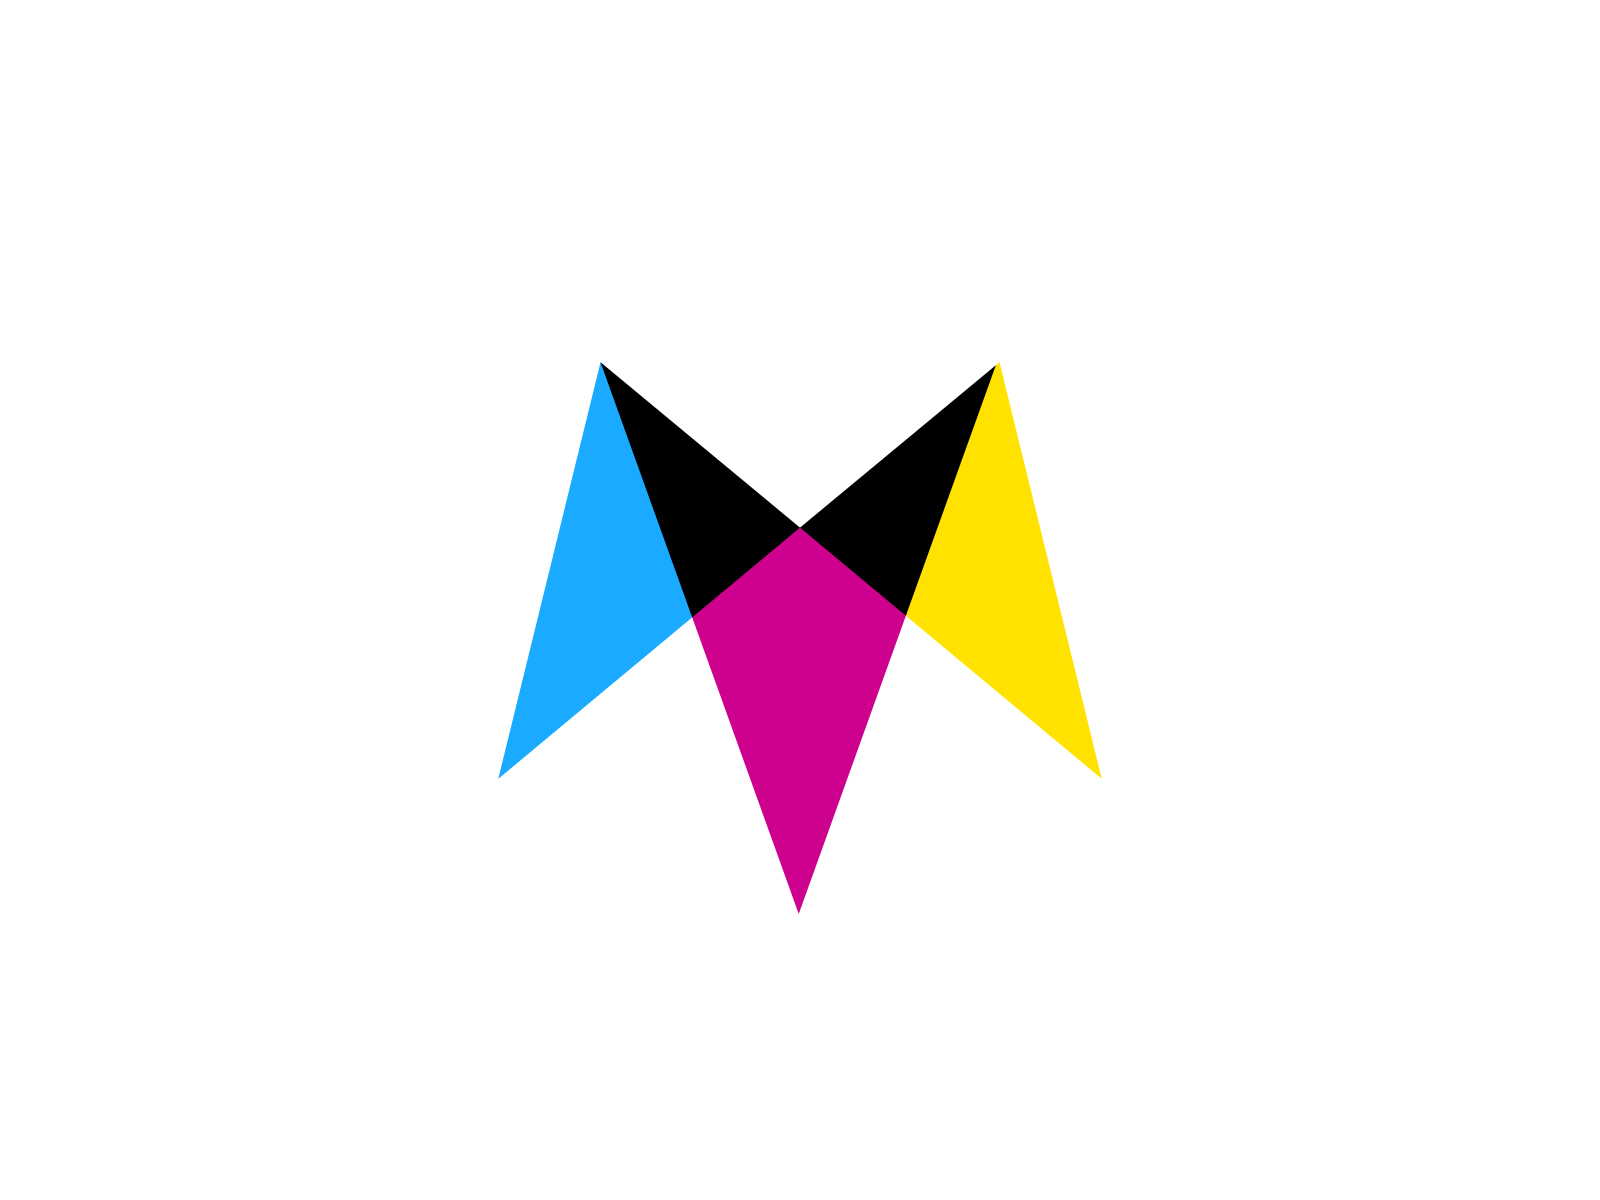 Cmyk Logo PNG Transparent Images Free Download | Vector Files | Pngtree